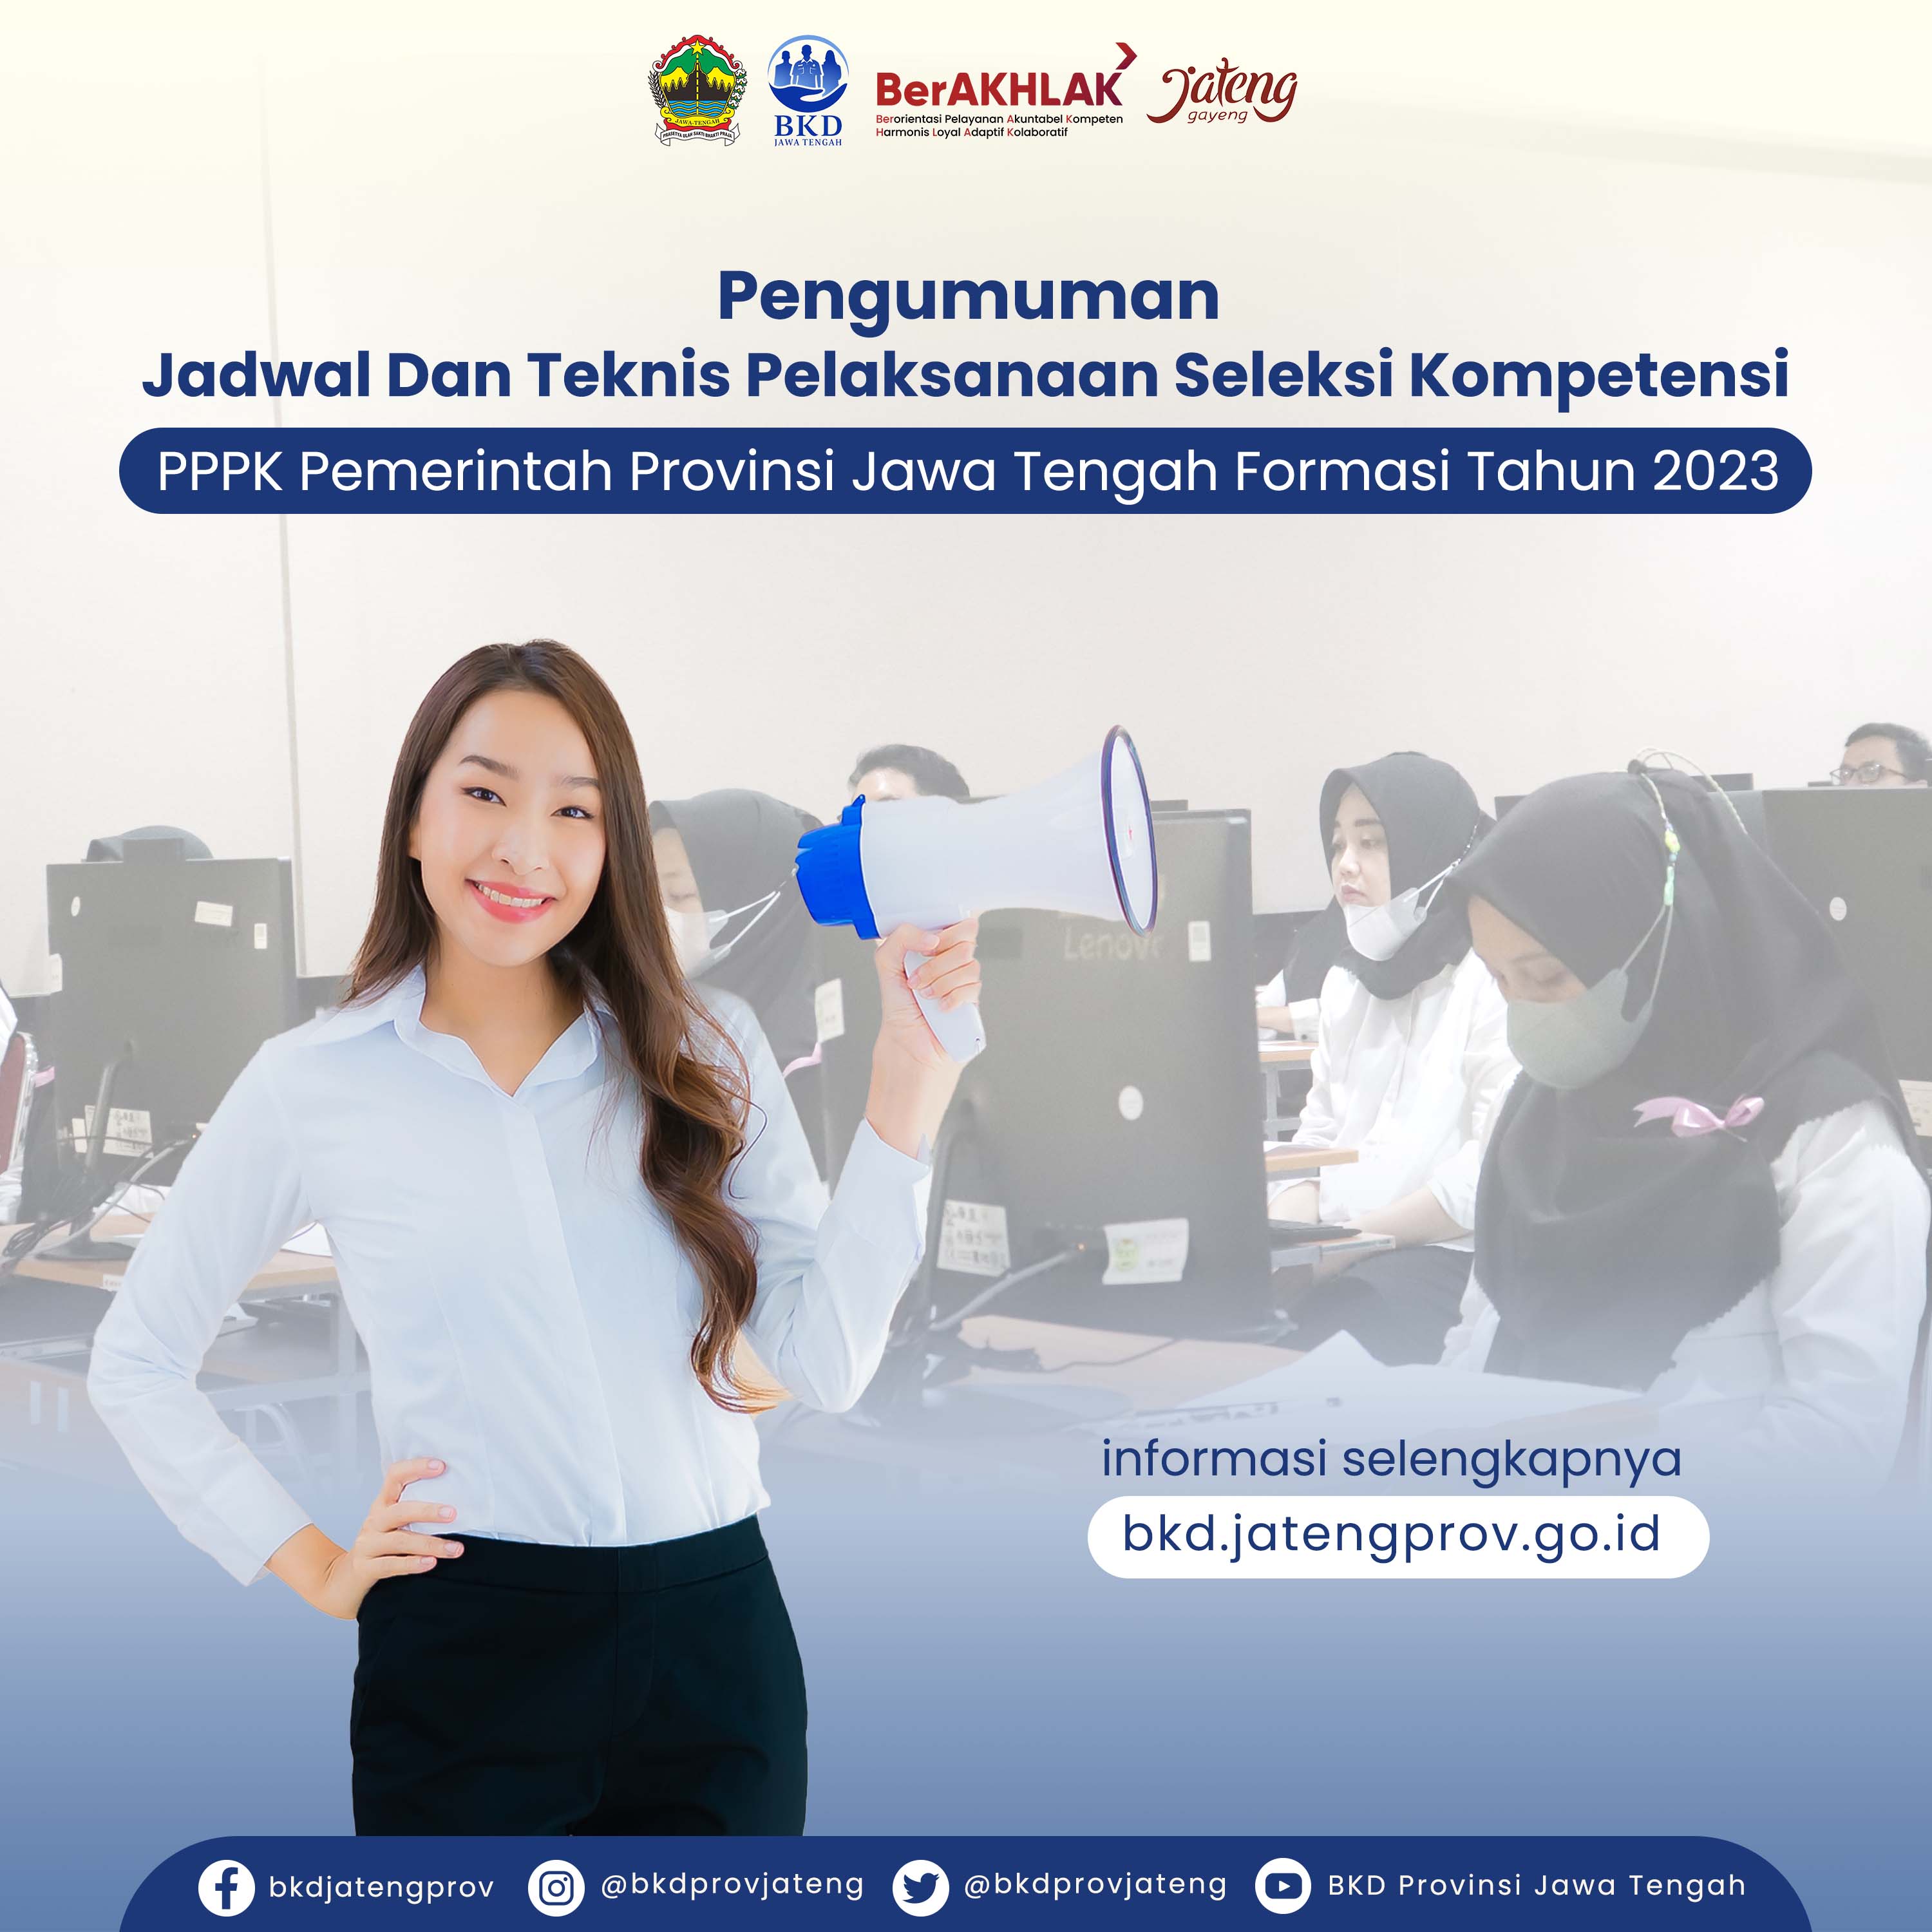 Jadwal Dan Teknis Pelaksanaan Seleksi Kompetensi PPPK Pemerintah Provinsi Jawa Tengah Formasi Tahun 2023